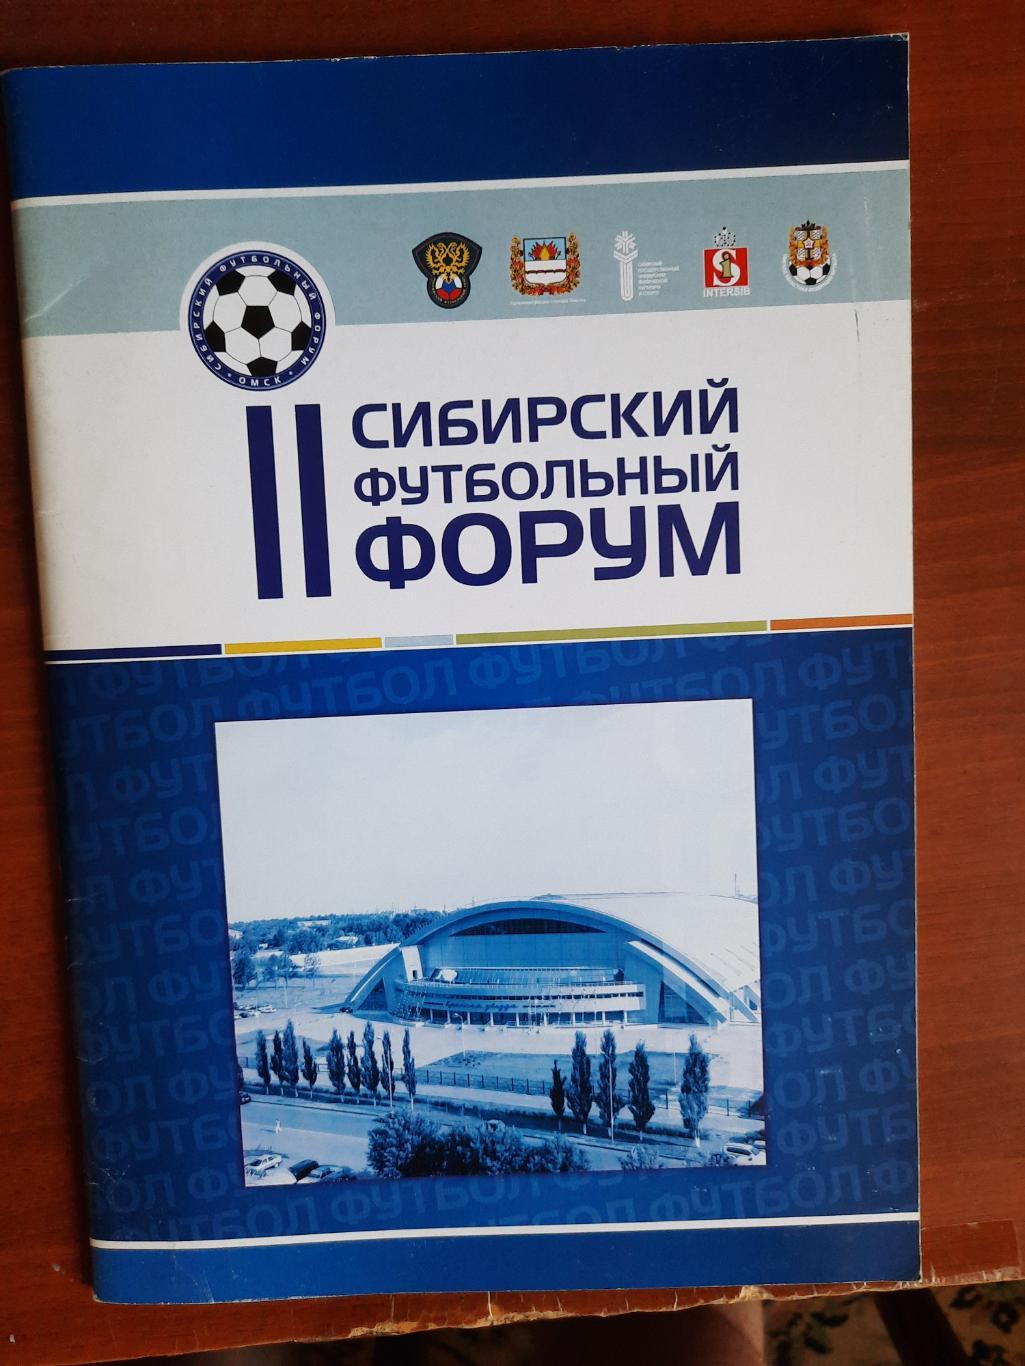 II Сибирский футбольный форум (Екатеринбург Тюмень Воронеж Пермь Новосибирск)